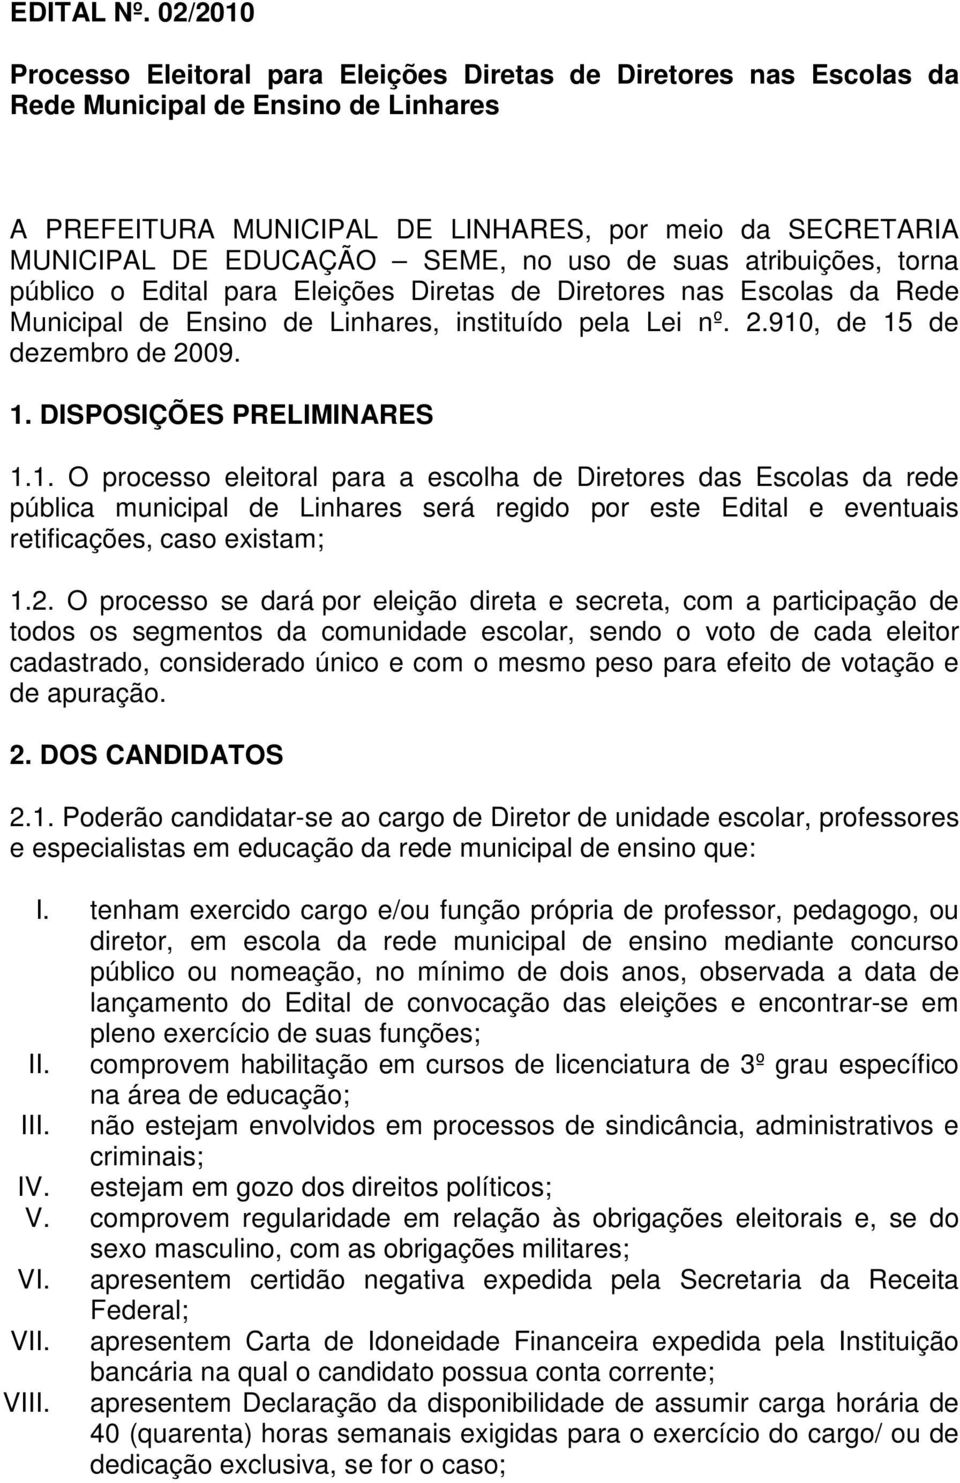 SEME, no uso de suas atribuições, torna público o Edital para Eleições Diretas de Diretores nas Escolas da Rede Municipal de Ensino de Linhares, instituído pela Lei nº. 2.